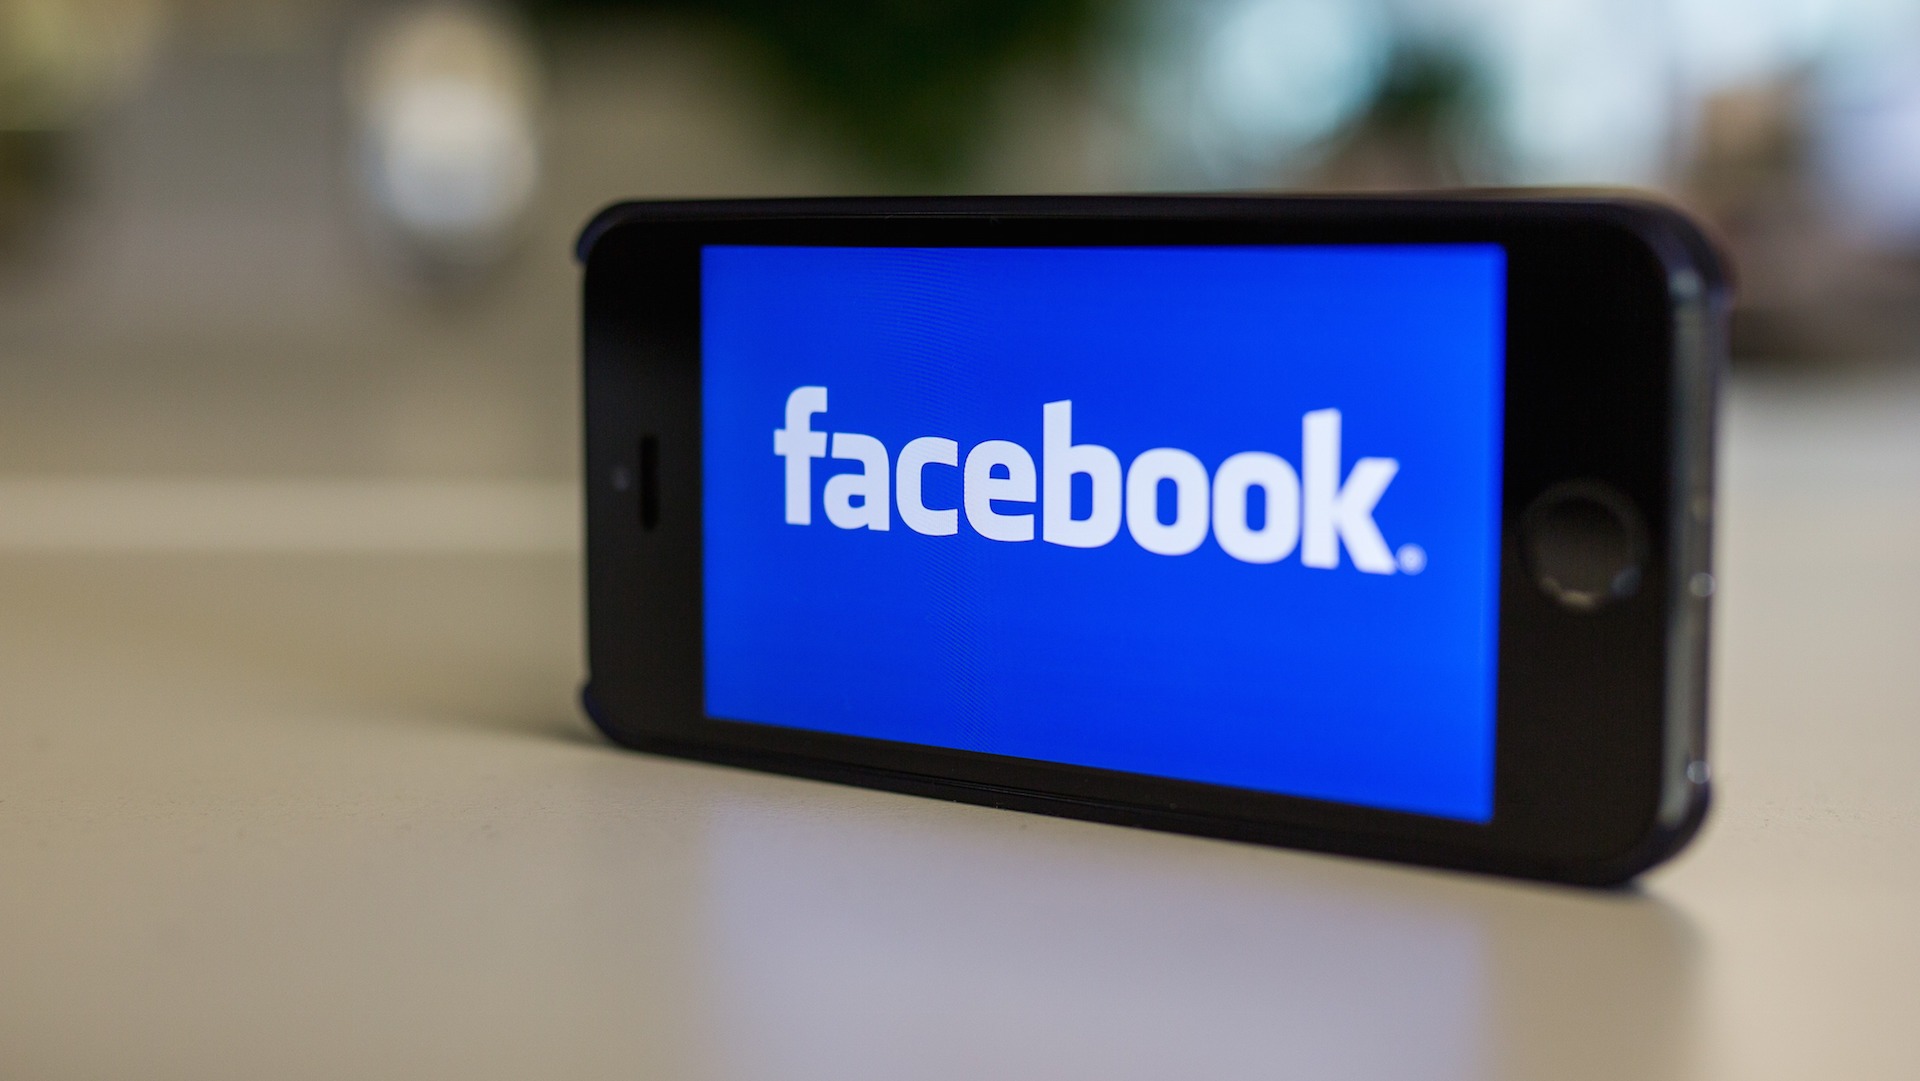 خاصية جديدة من فايسبوك Facebook للتواصل بسهولة مع غير الاصدقاء